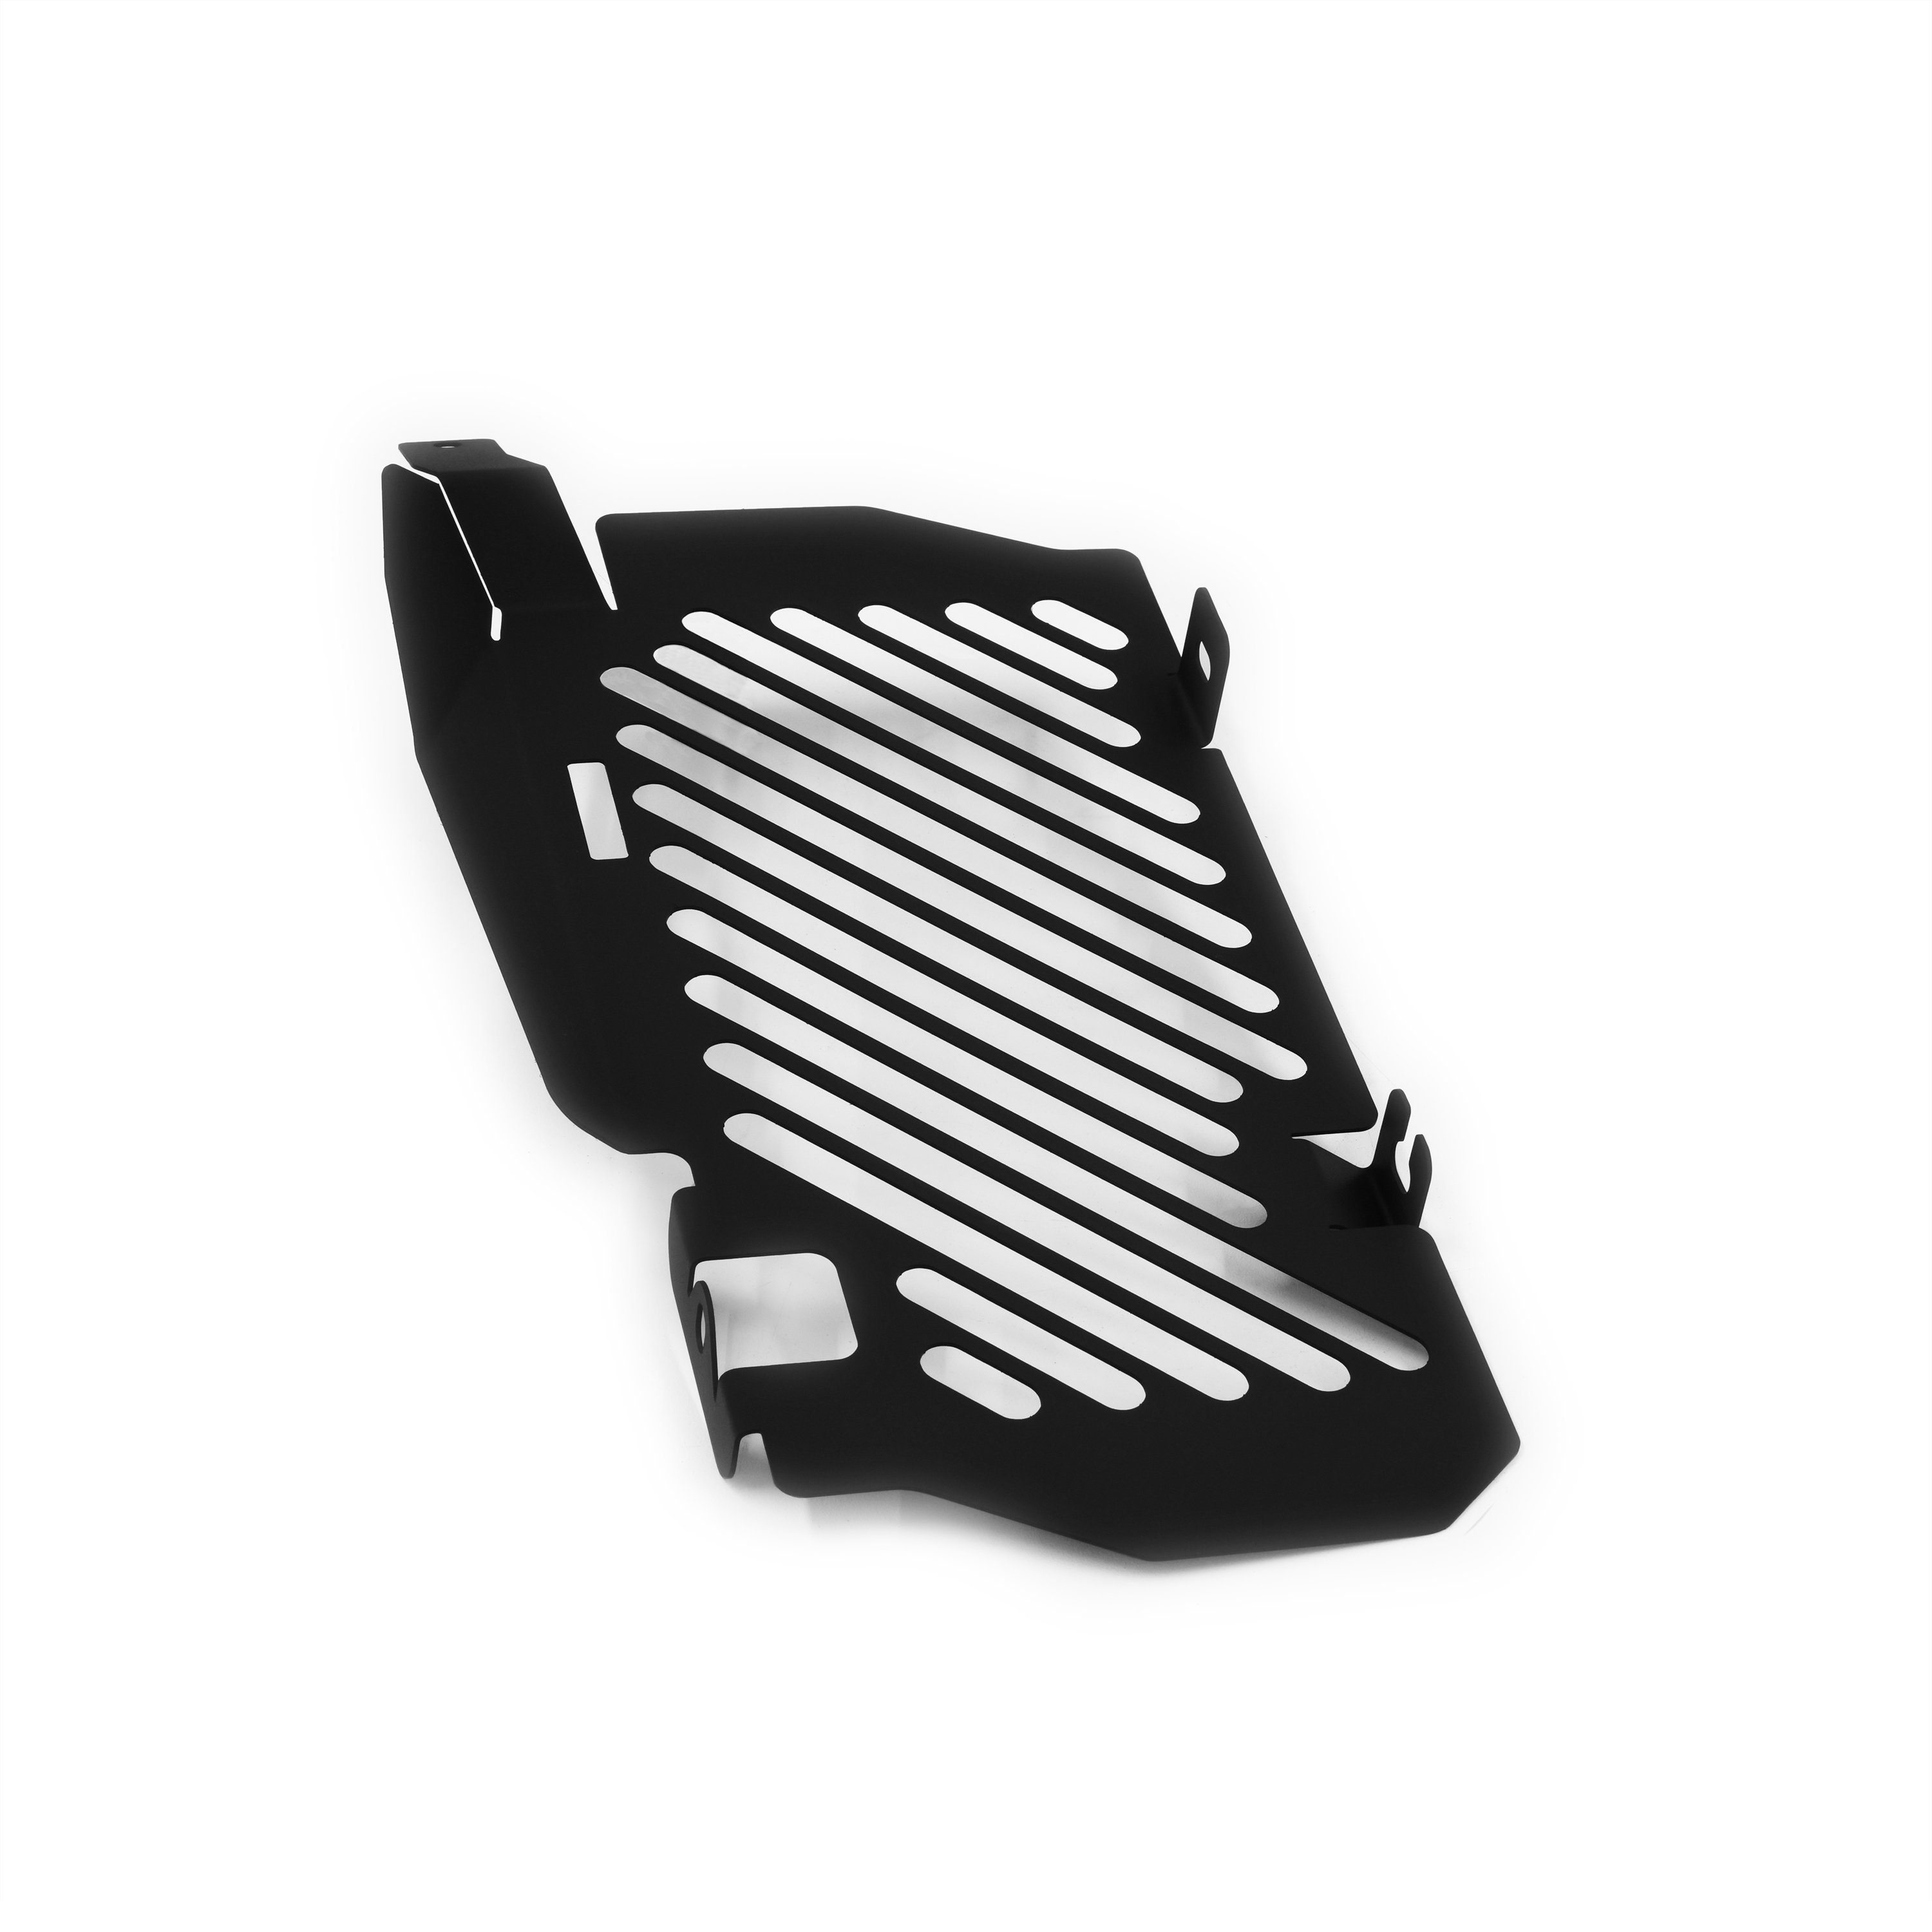 Motorradkühlerabdeckung für Kühlerabdeckung schwarz, ZIEGER L Honda Clean 300 Motorrad-Additiv CRF